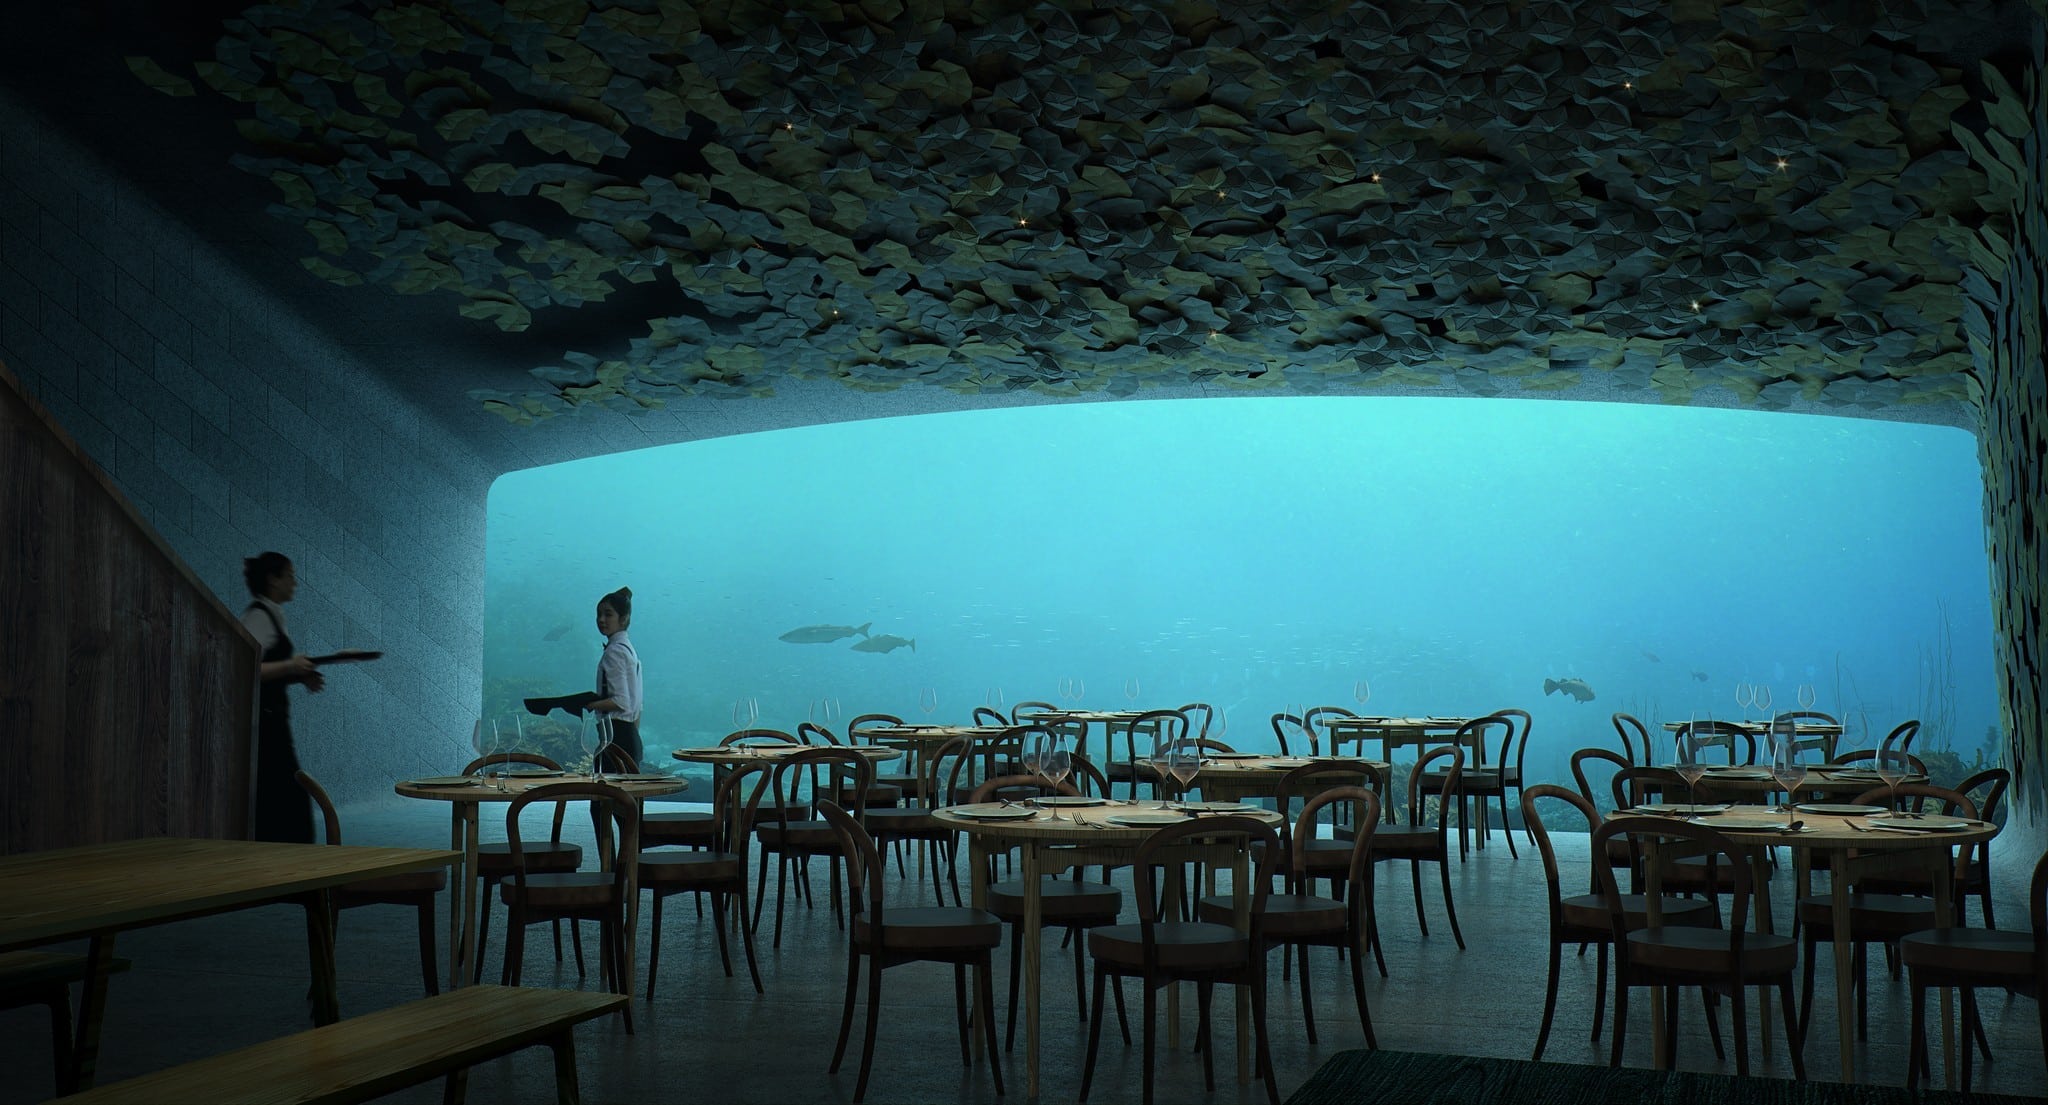 Europe’s very first underwater restaurant